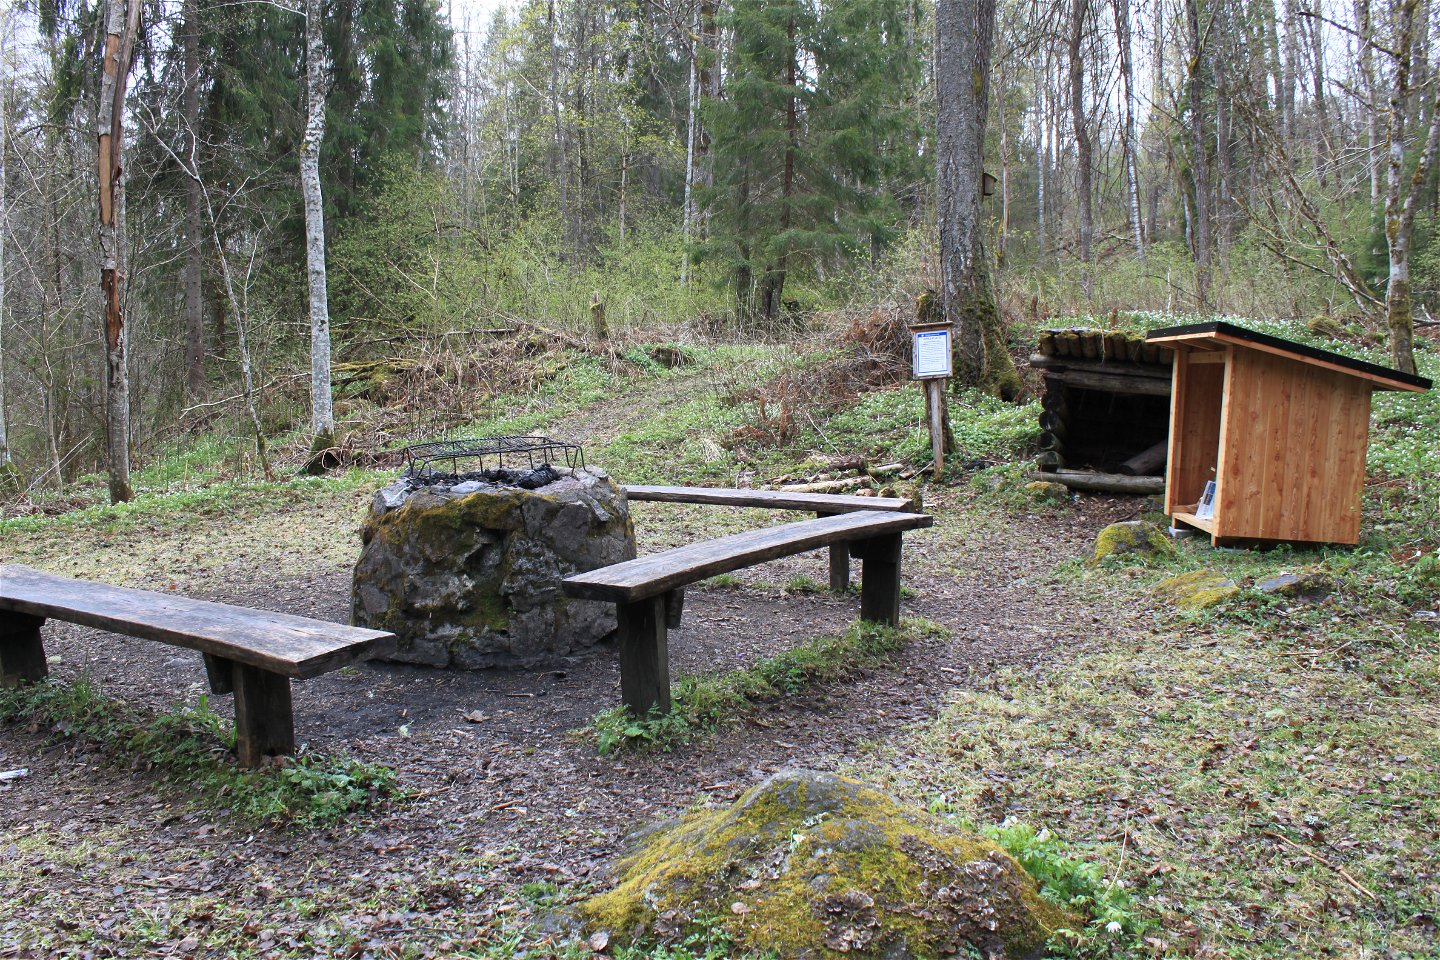 På en öppen yta i skogen står en grillplats med tre sittbänkar runtom. Bredvid finns mindre vedförråd och en informationsskylt. 